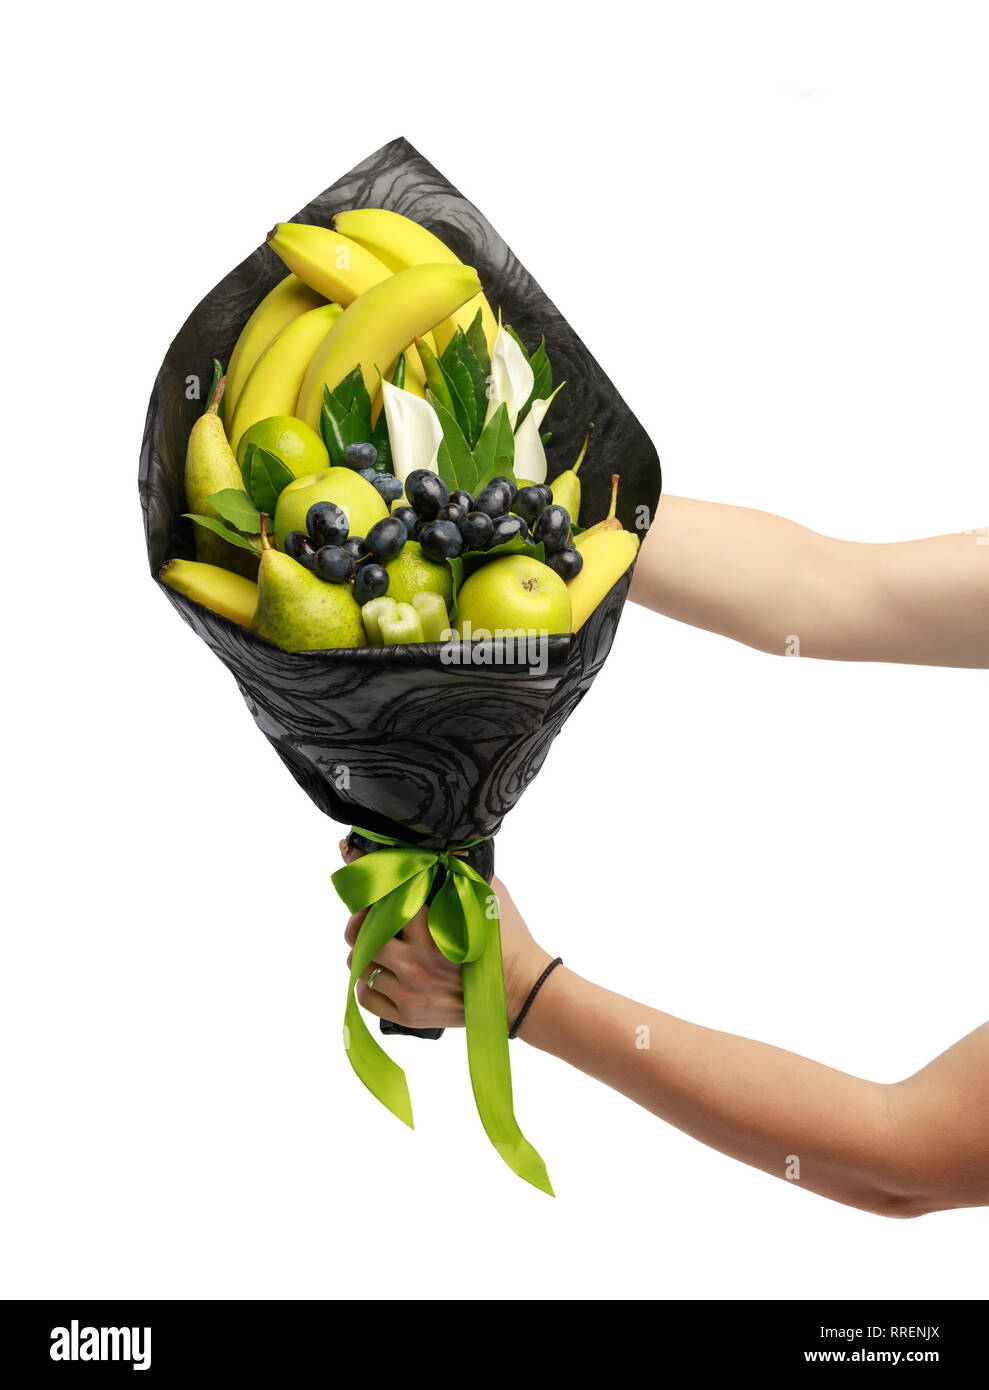 Insolito bouquet commestibile costituito di banane, pere, mele, calce e uve nere nelle mani di una donna su uno sfondo bianco Foto Stock